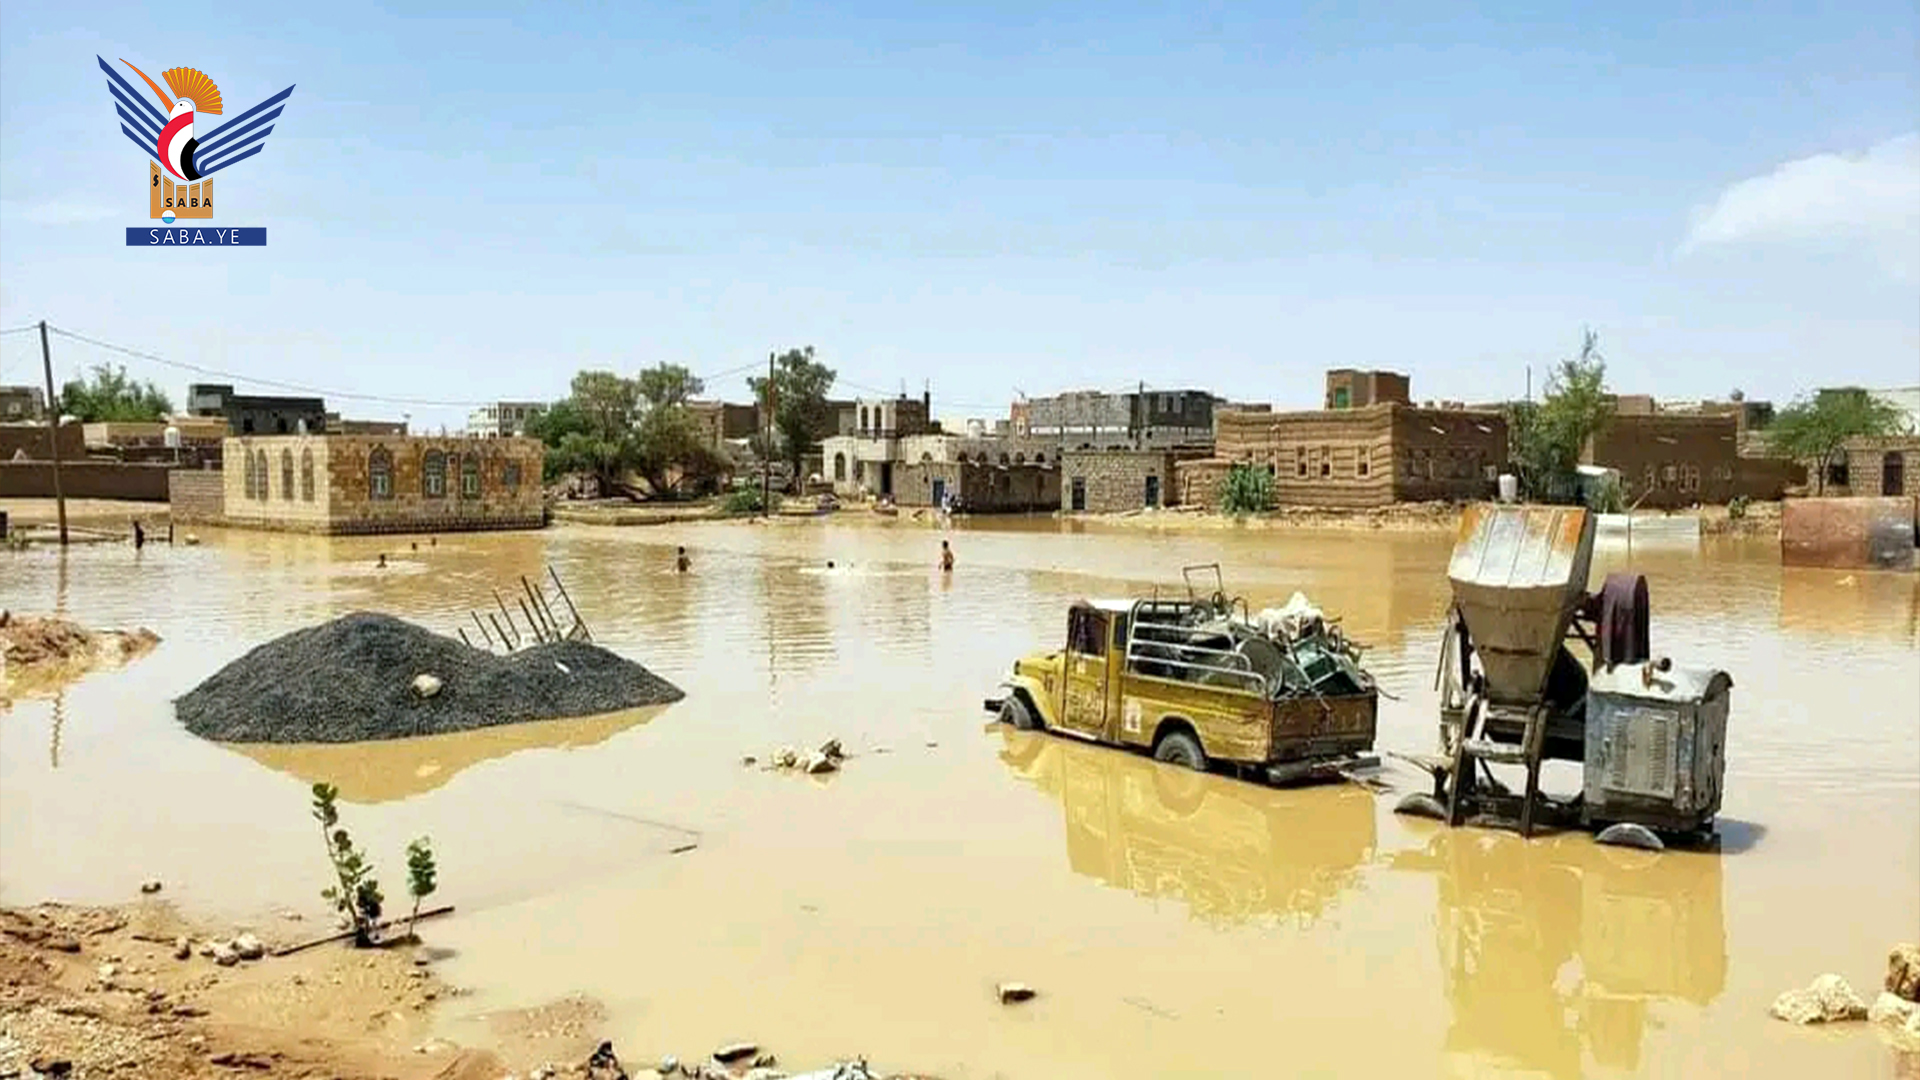  2 Töte und Dutzende von Häusern und Farmen wurden durch Regen beschädigt in Al-Dschouf 